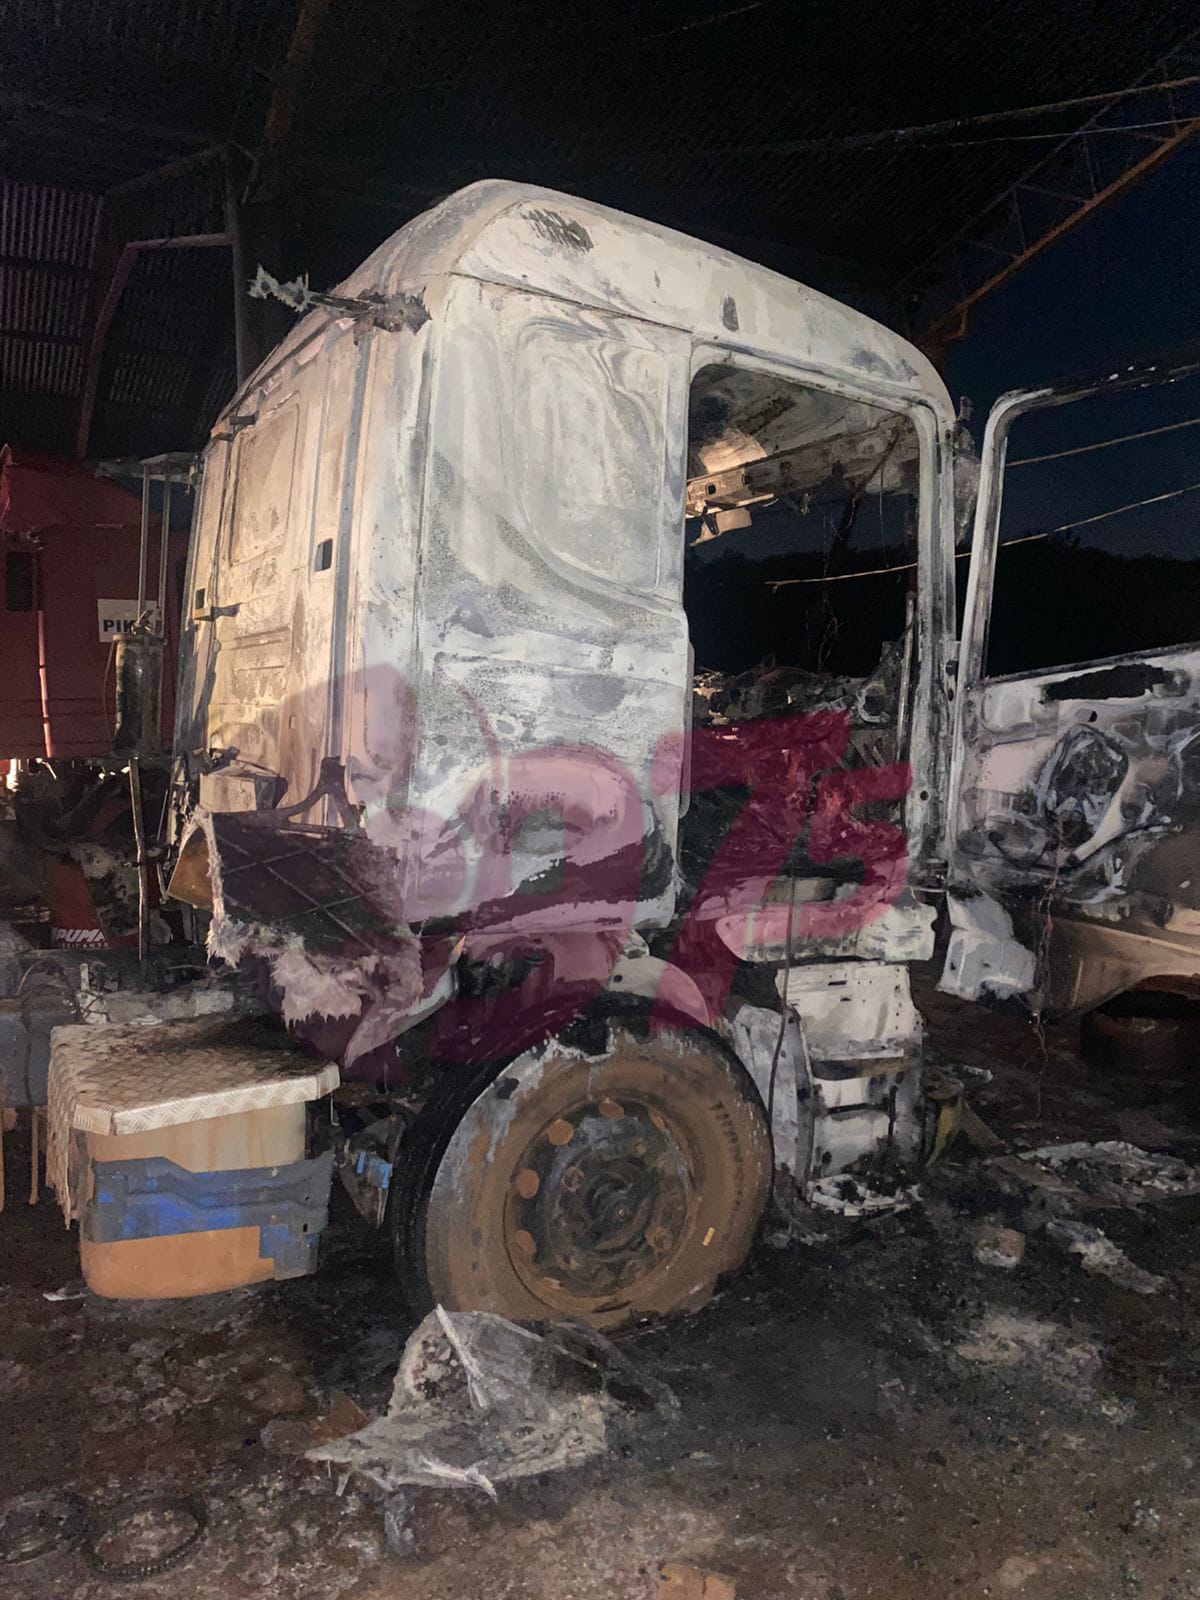 Tracto camión envuelto en llamas en el interior de una transportadora del Barrio Defensores del Chaco